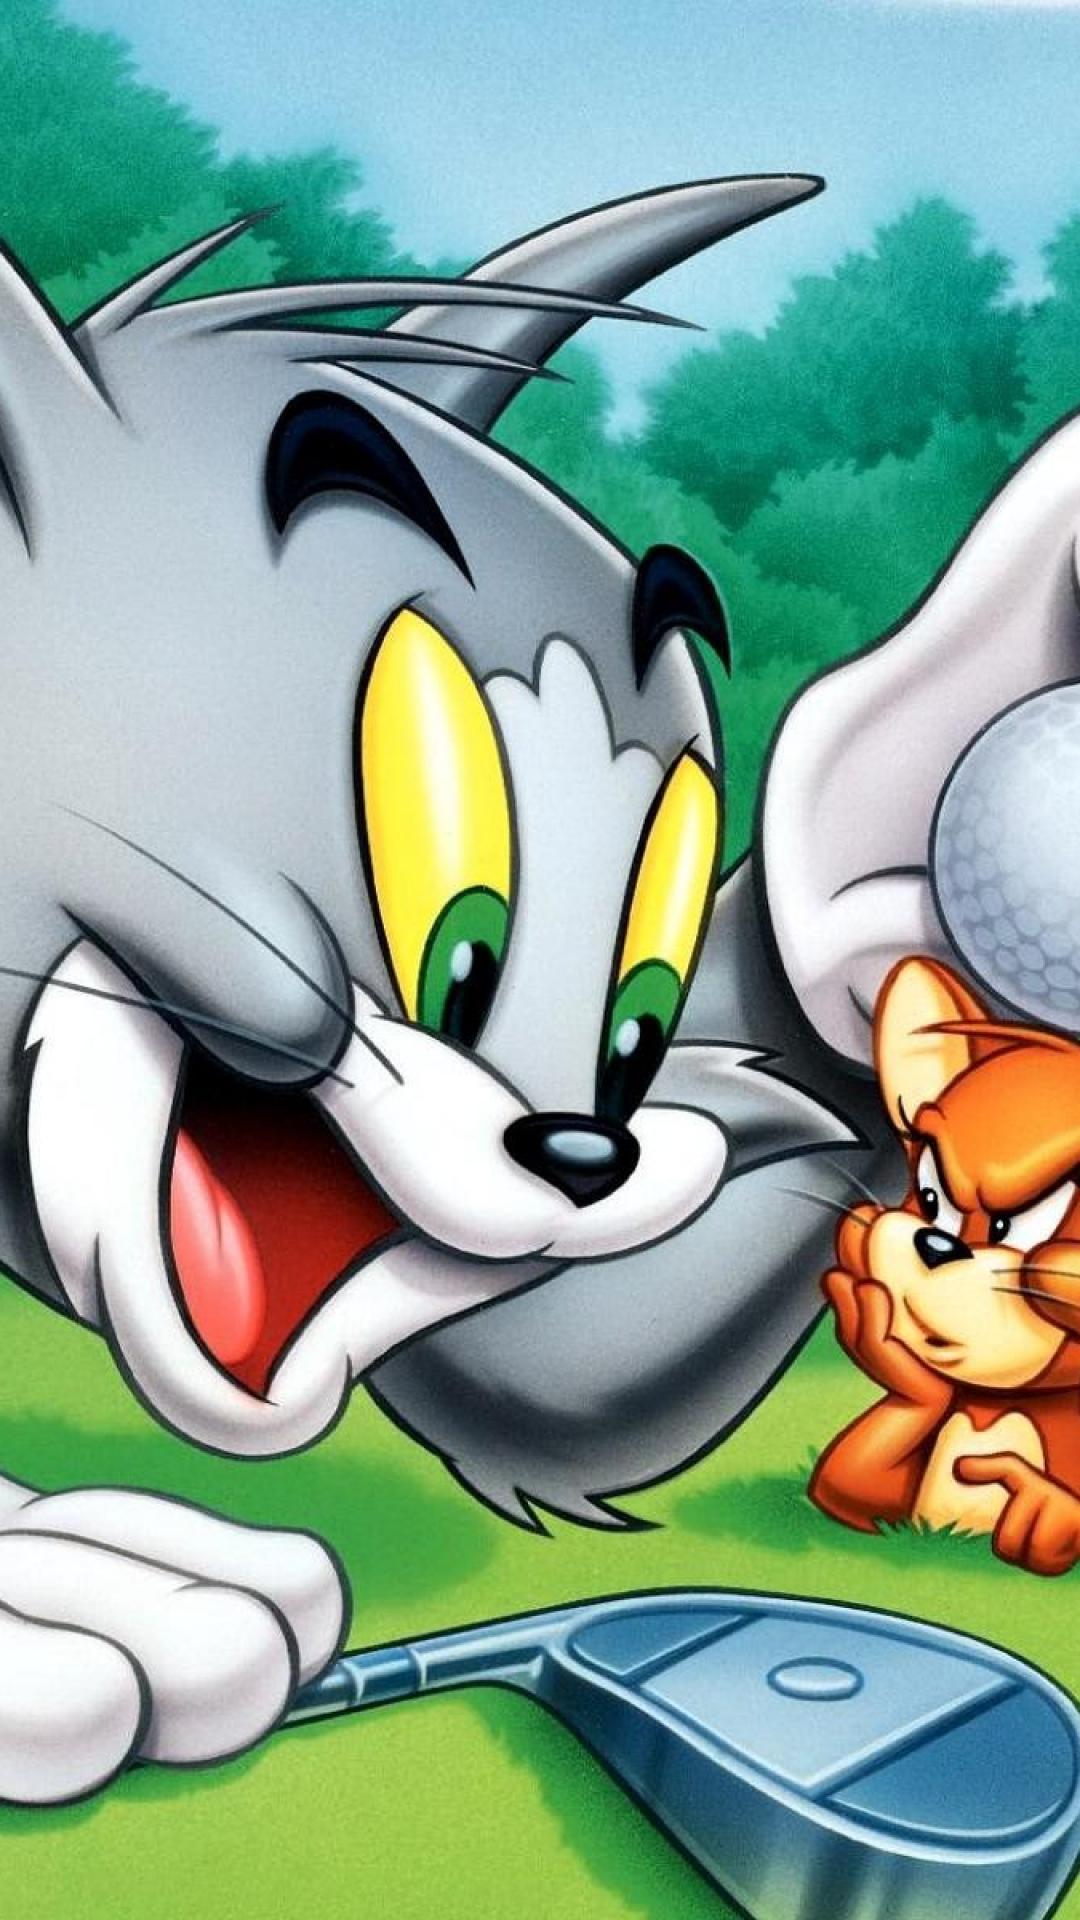 Những nhân vật phụ ấn tượng trong “Tom & Jerry” | VOV.VN